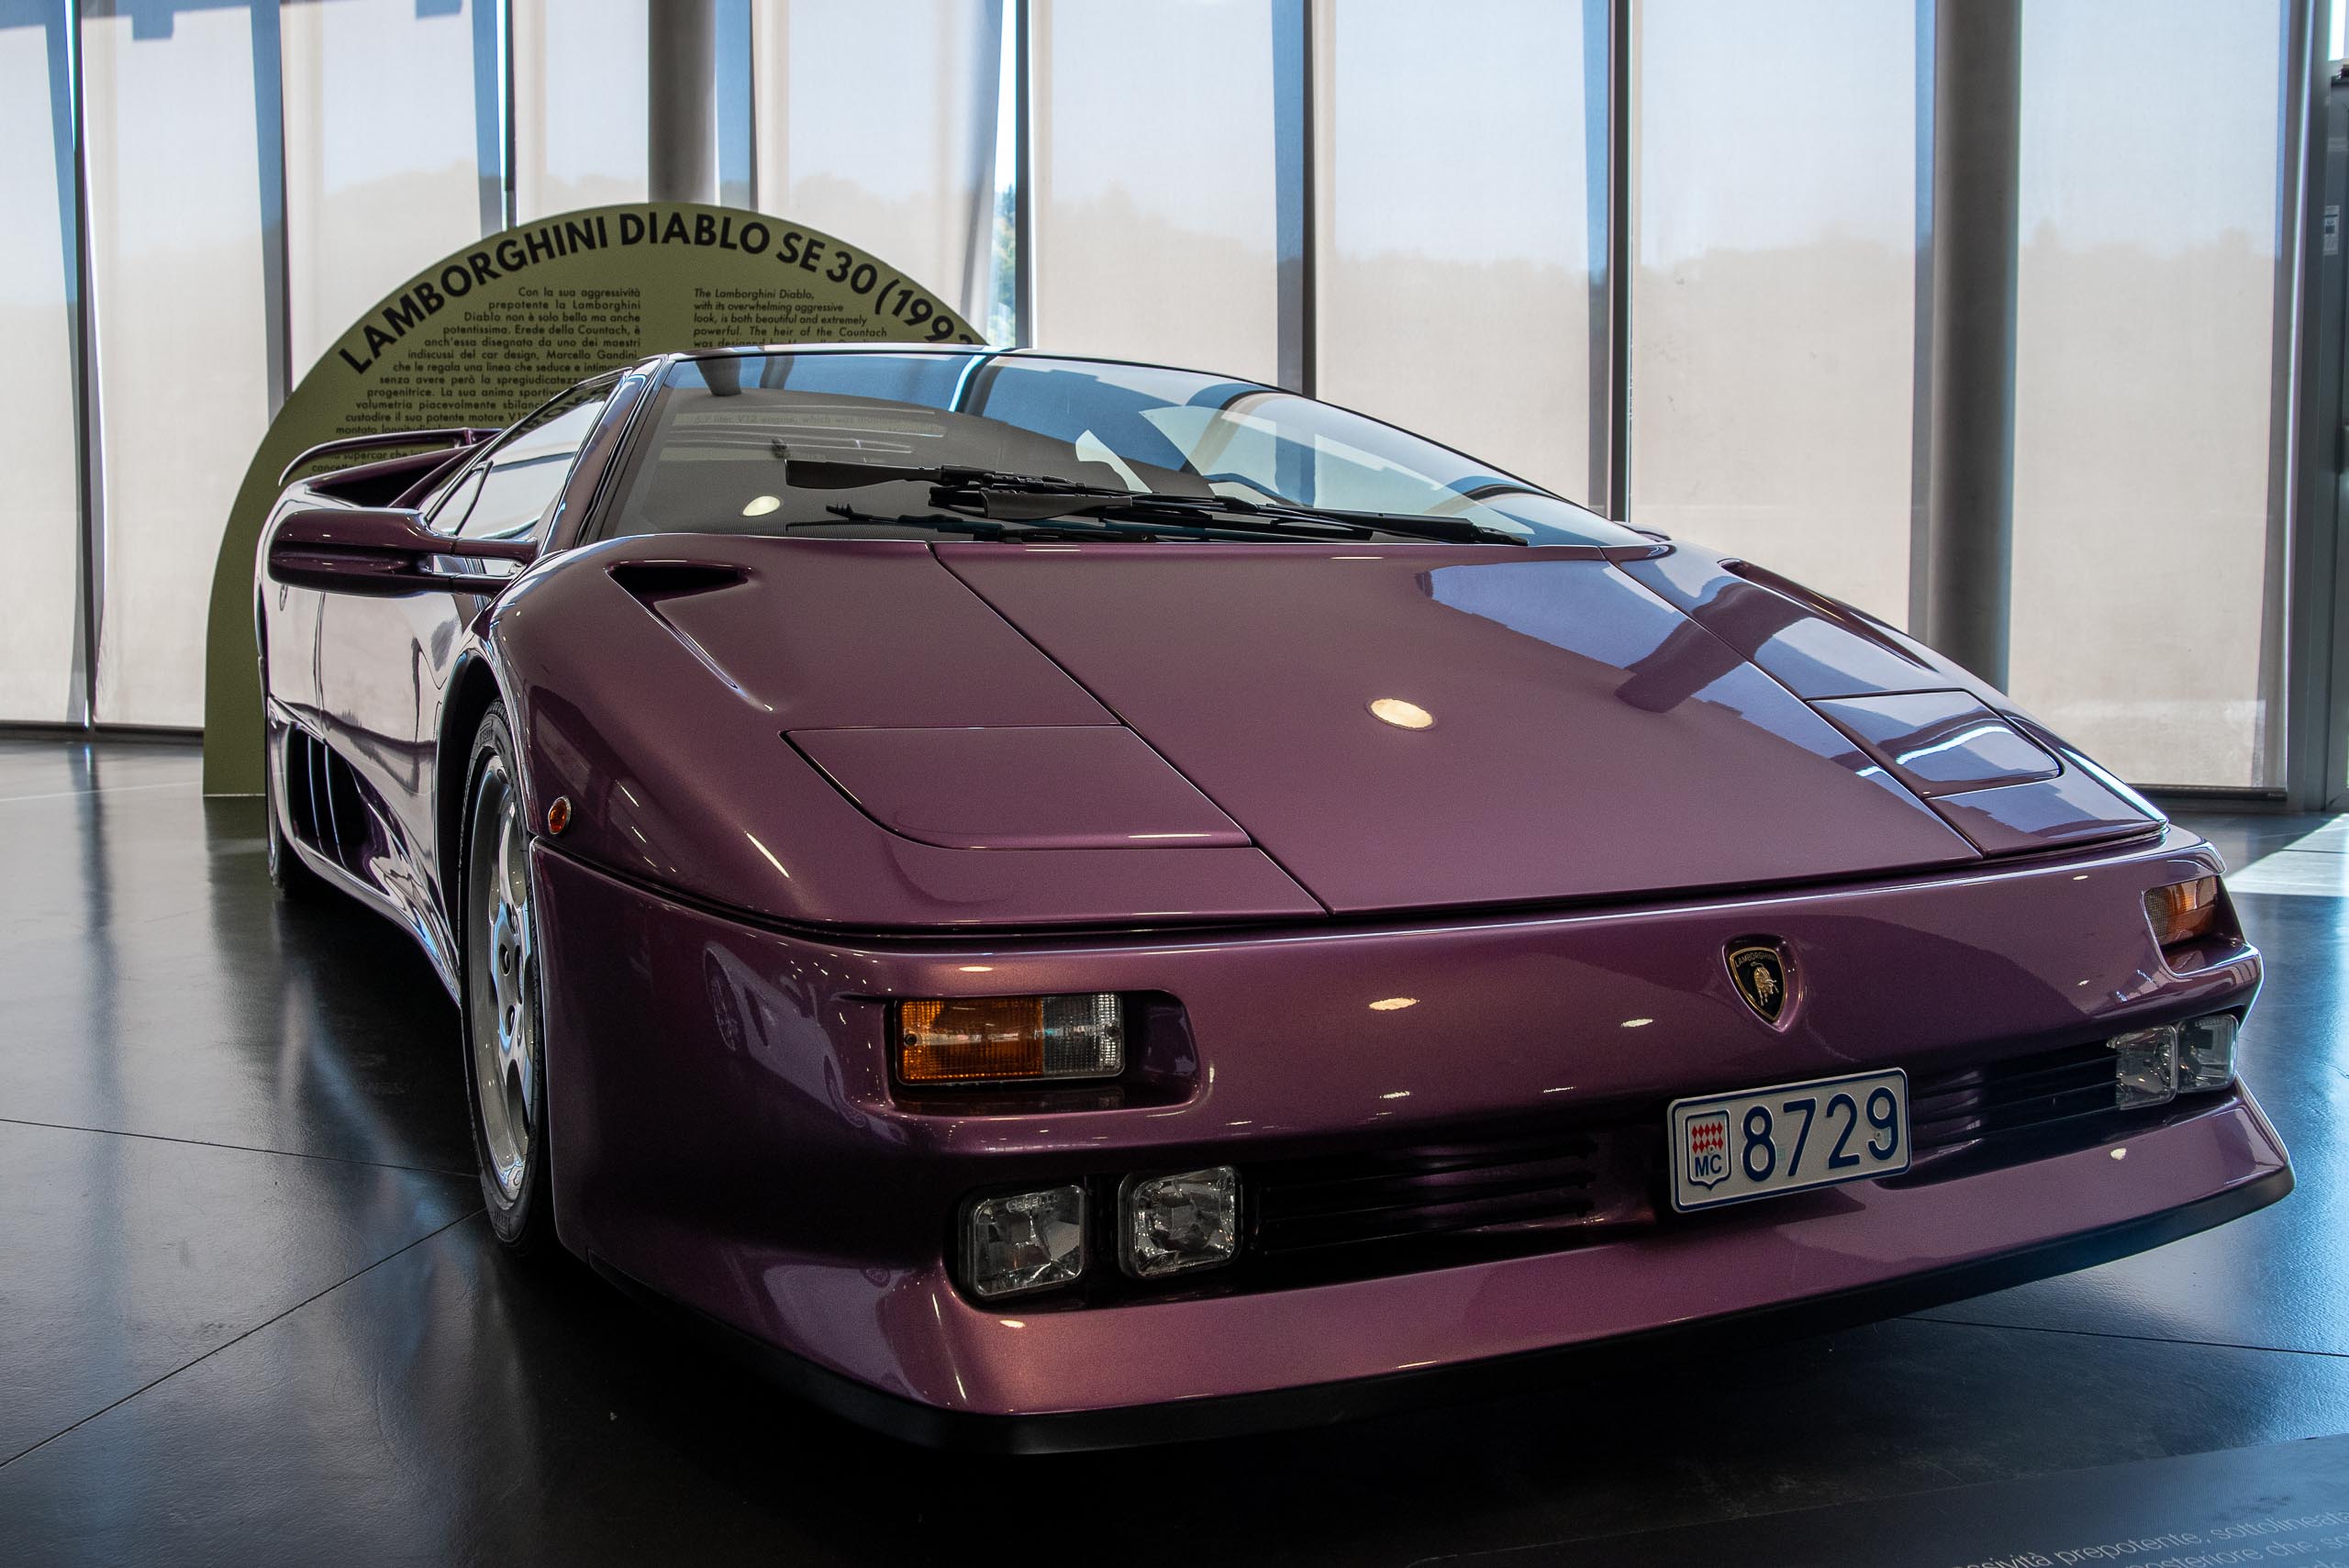 Lamborghini Diablo SE30 - Museo Nazionale dell'Automobile